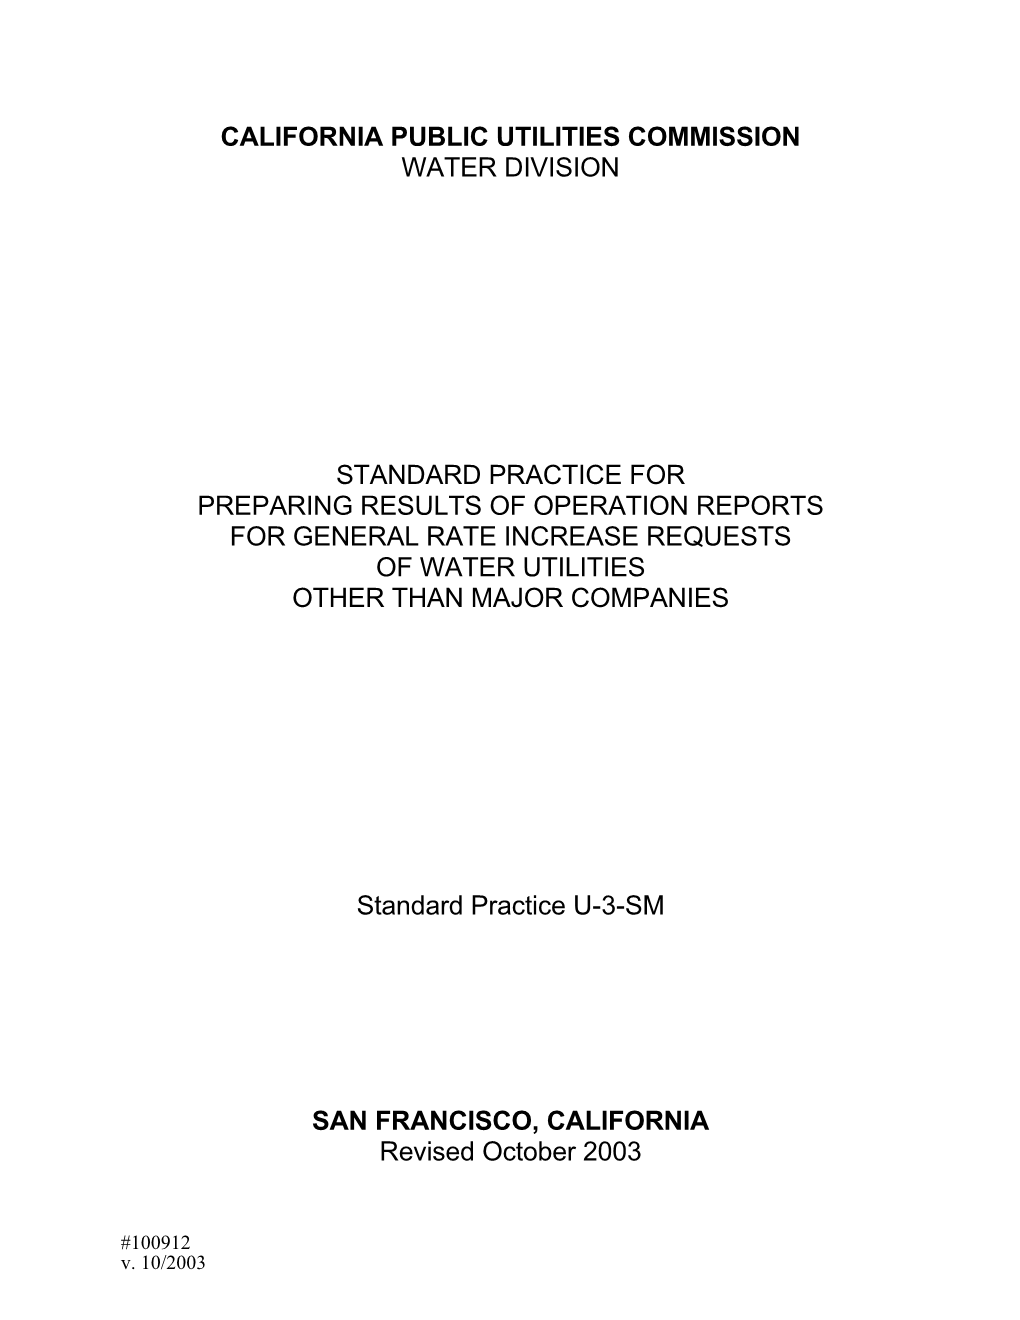 California Public Utilities Commission s1